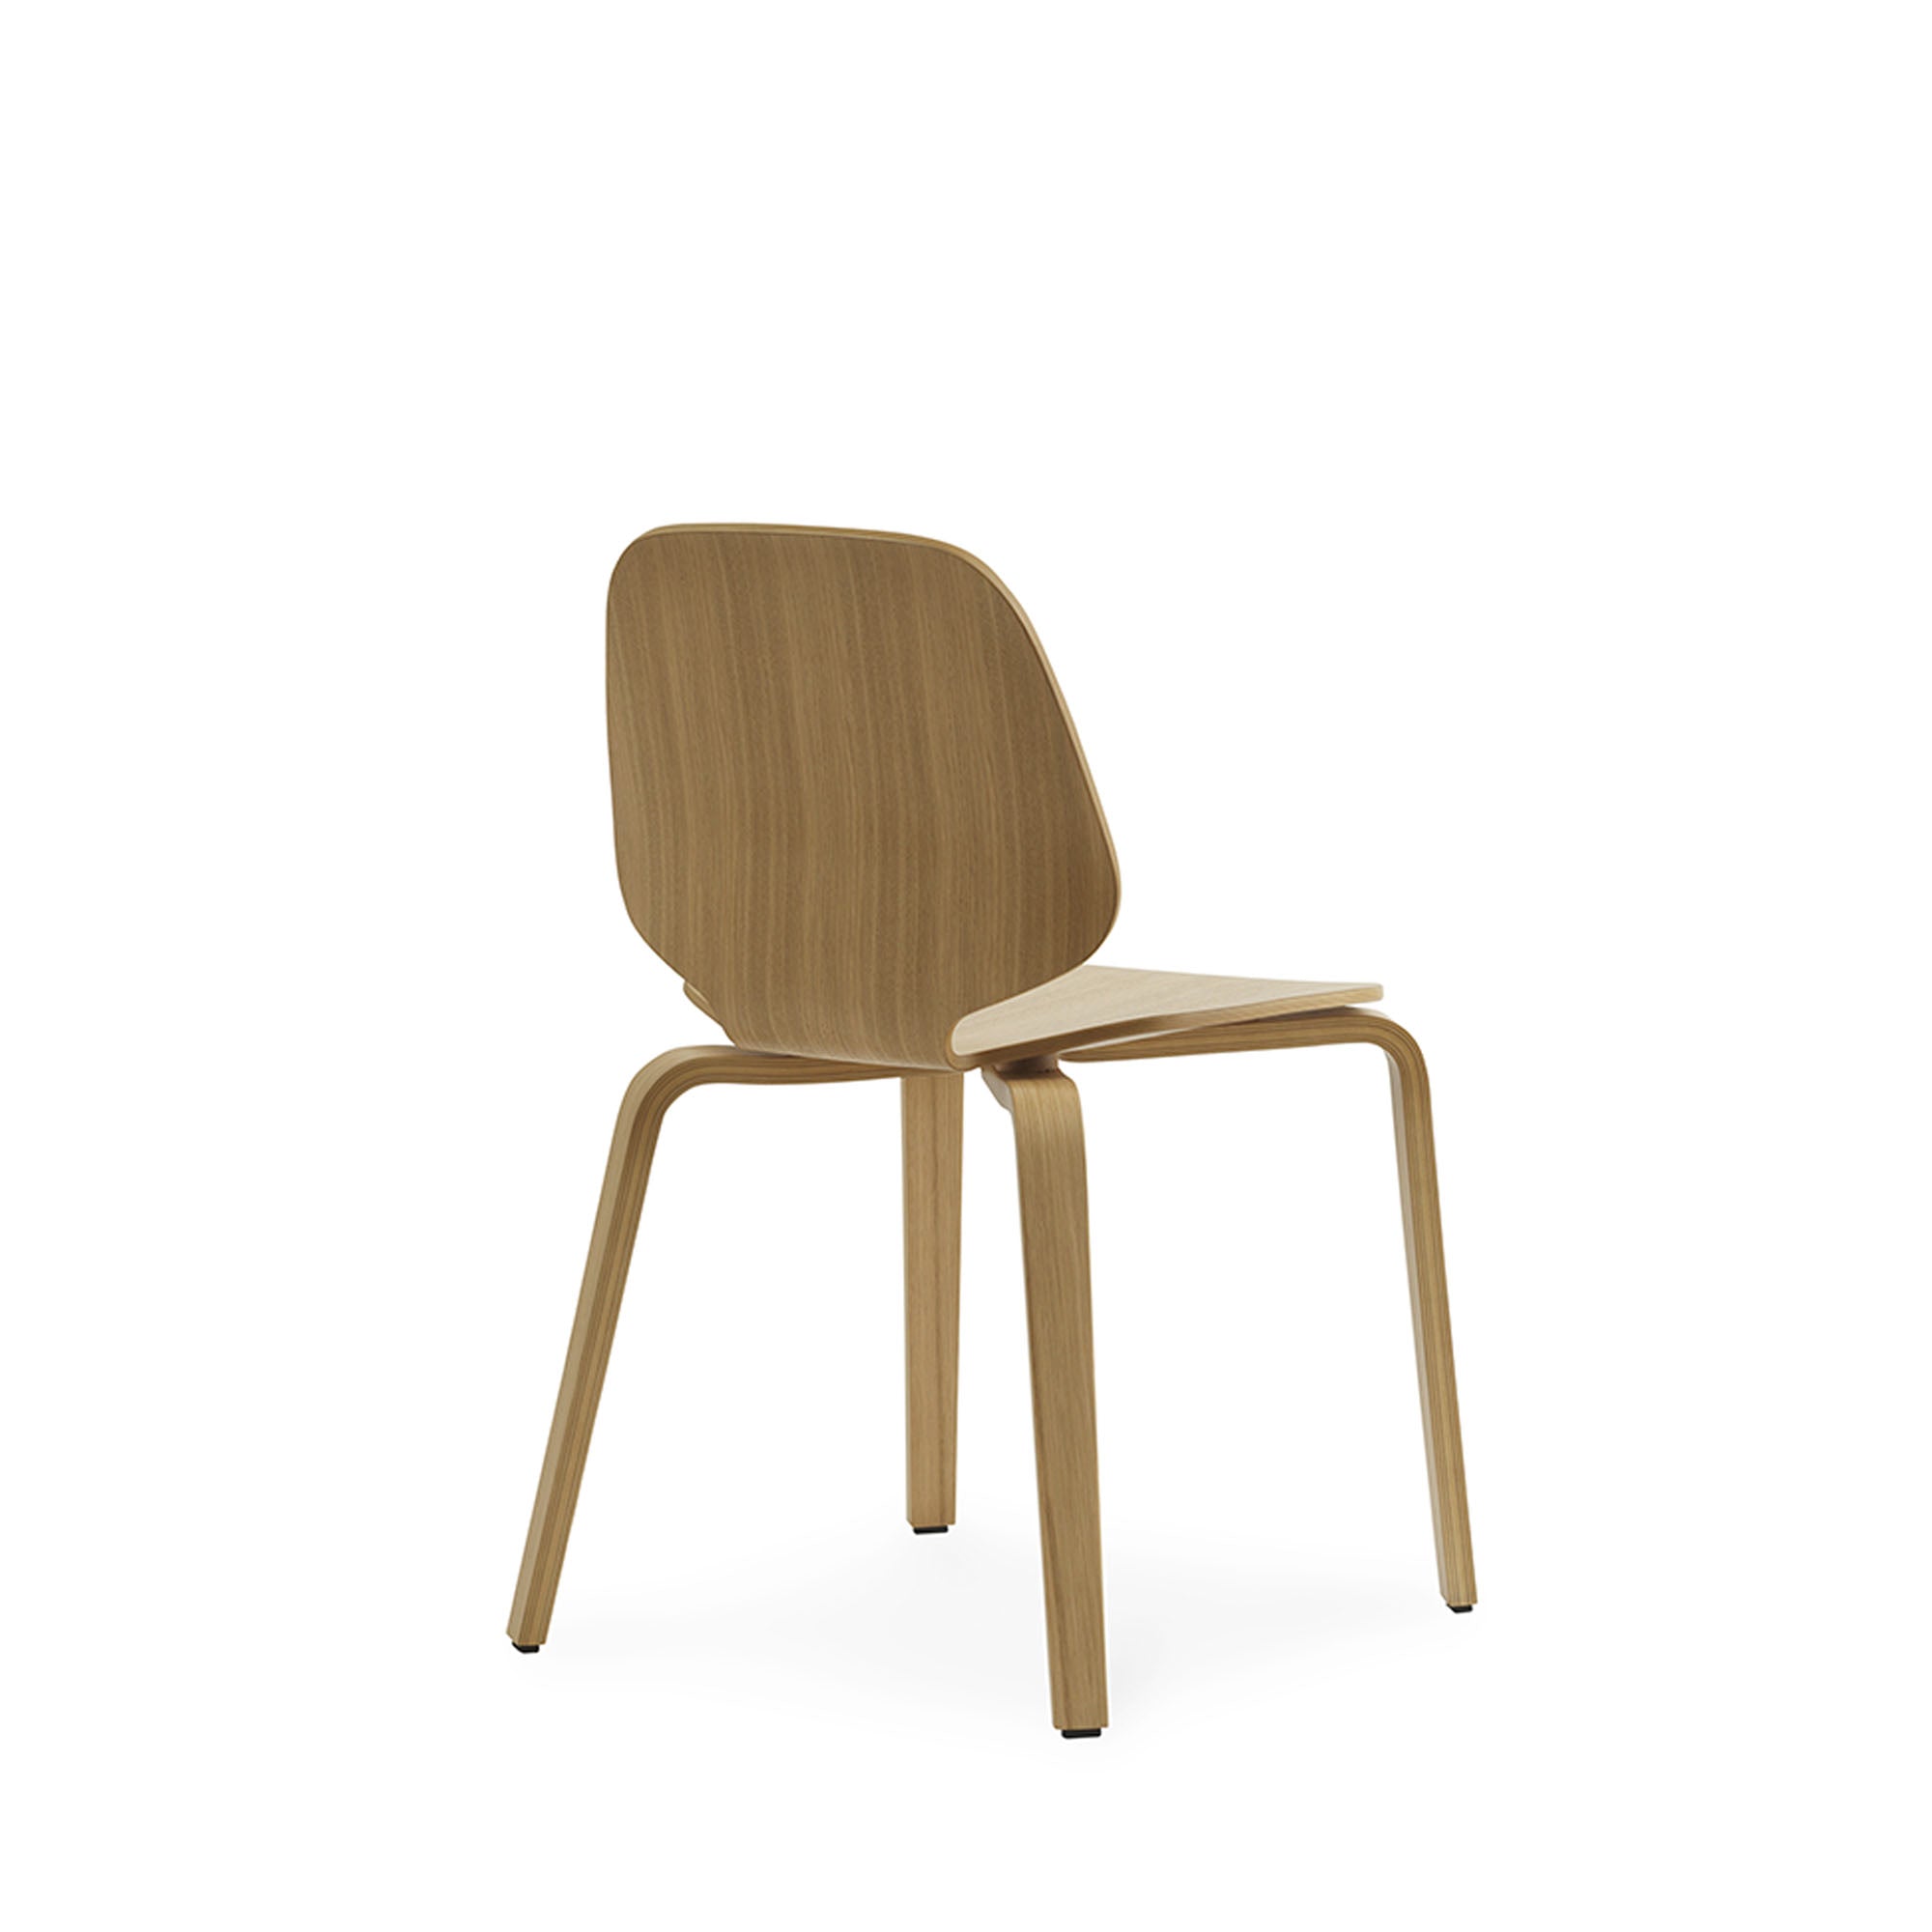 My Chair, scaun de lemn